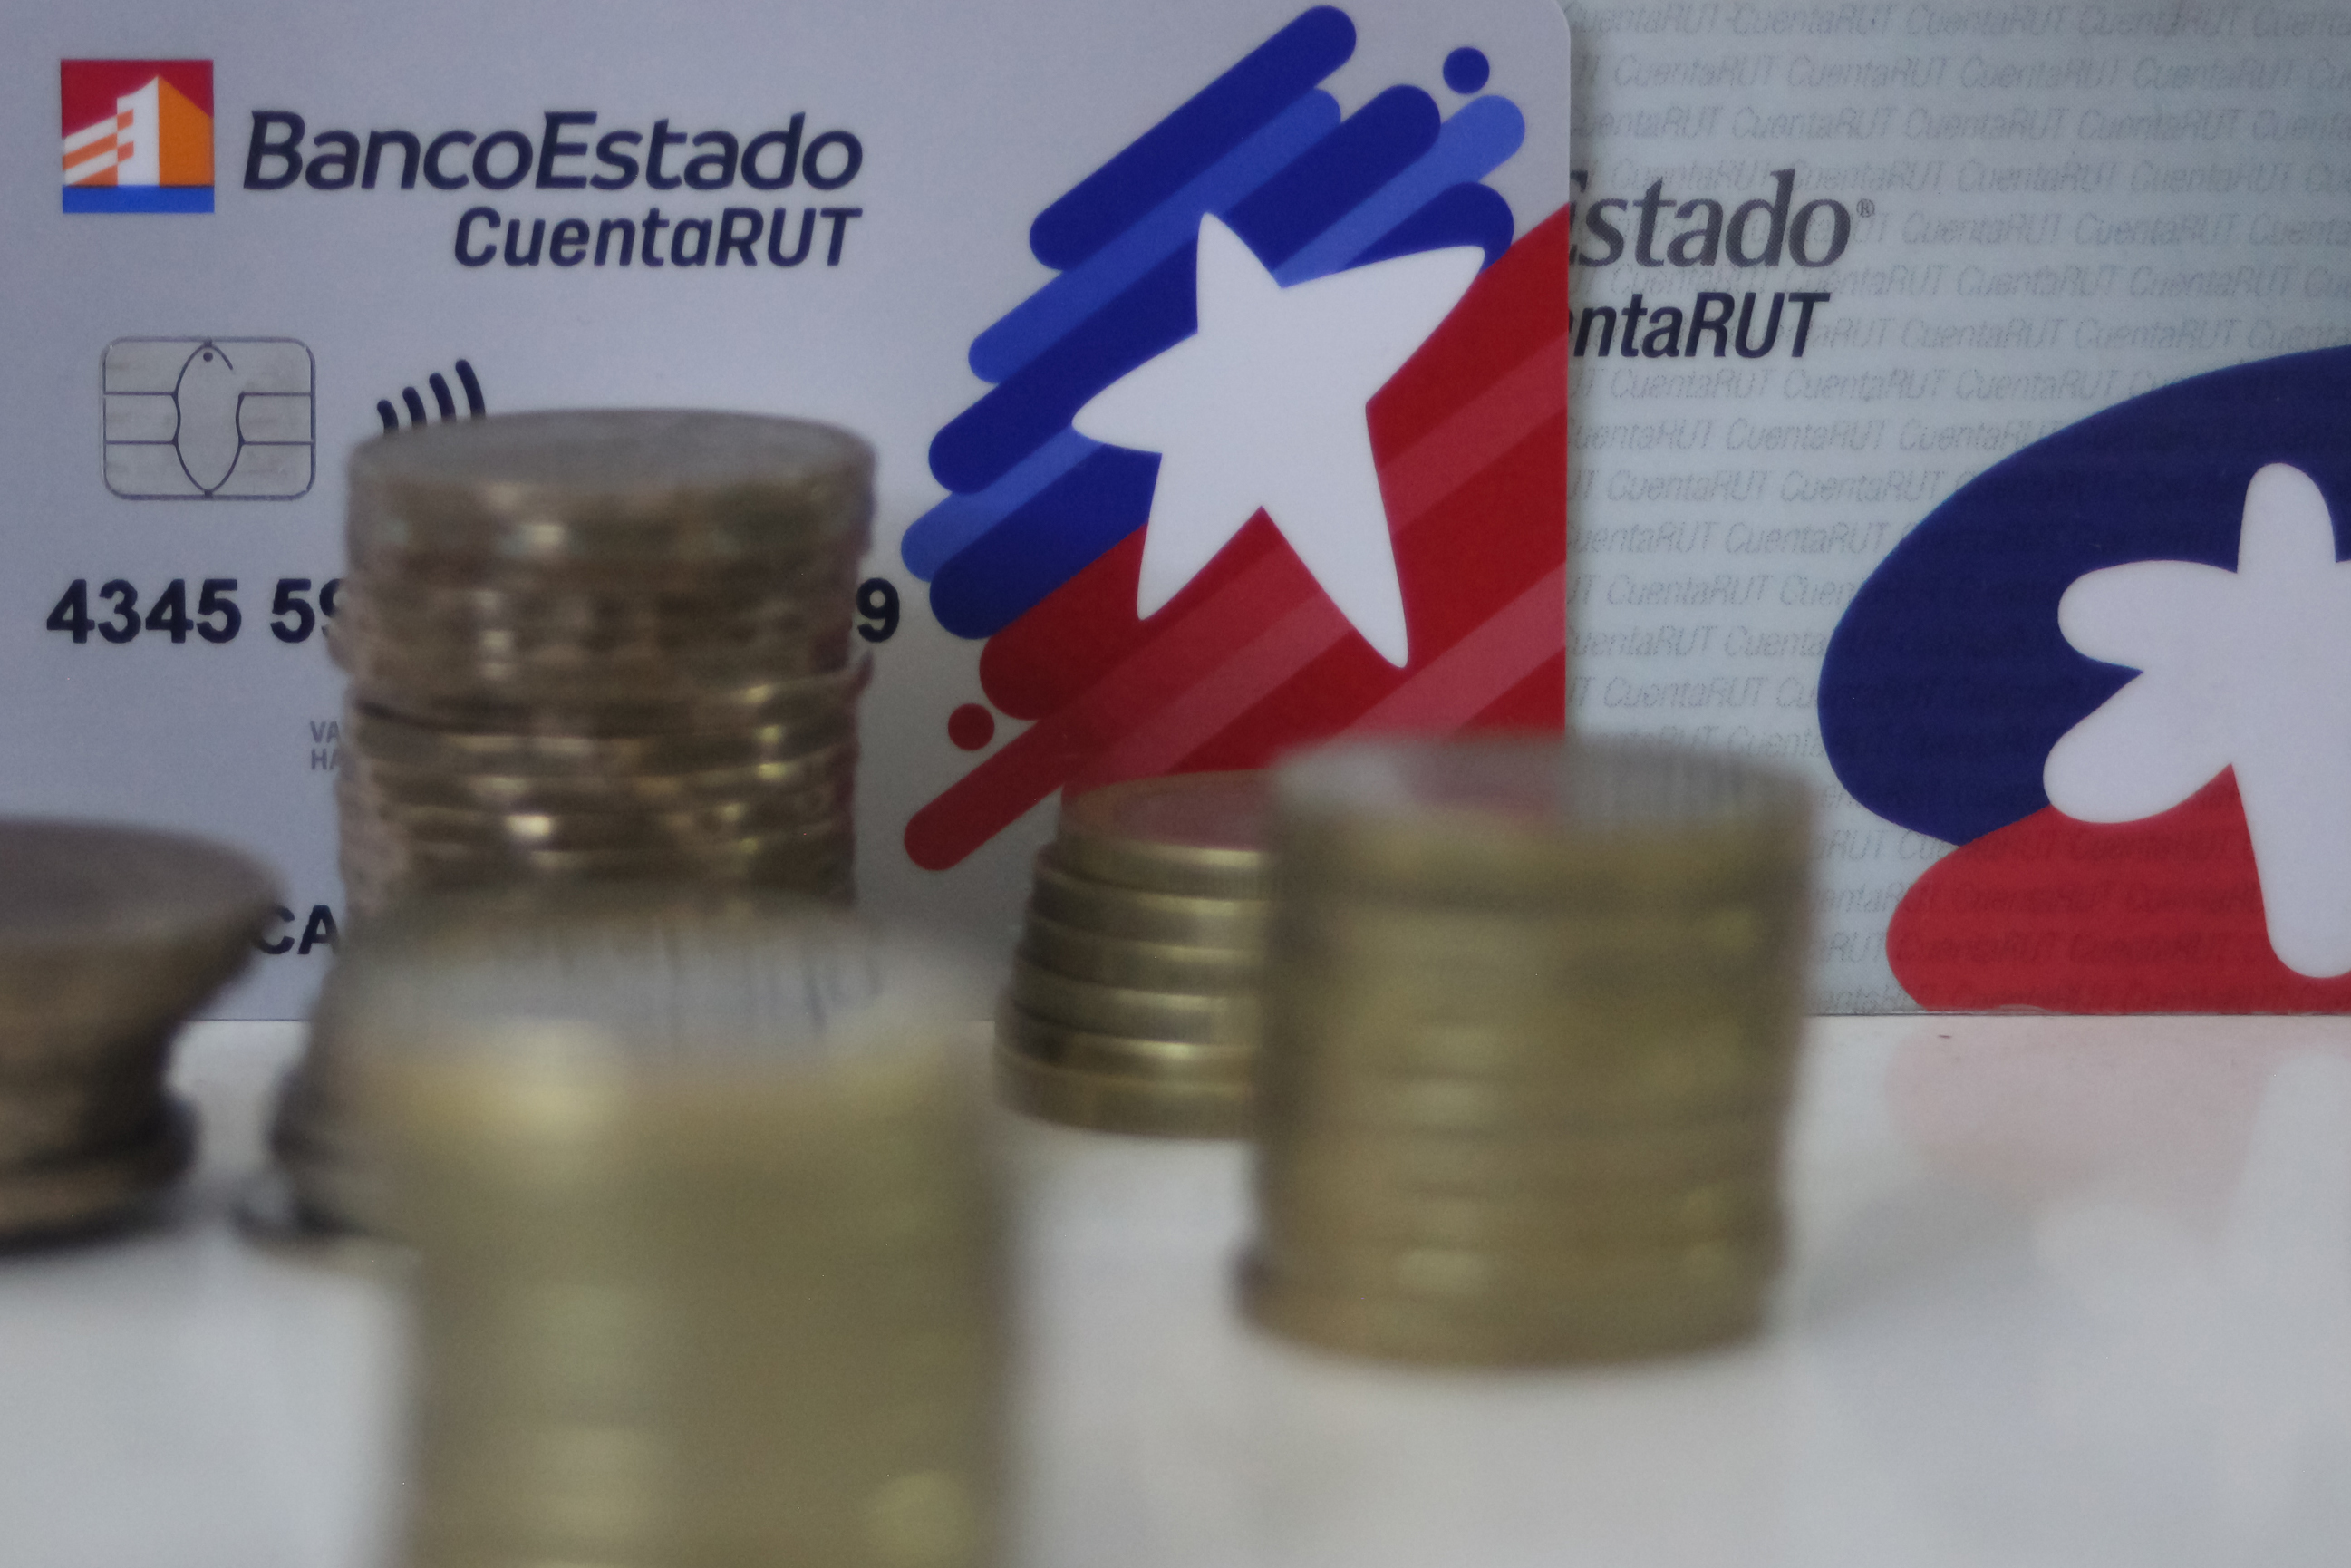 Moderas de pesos chilenos y en el fondo tarjetas de CuentaRUT 